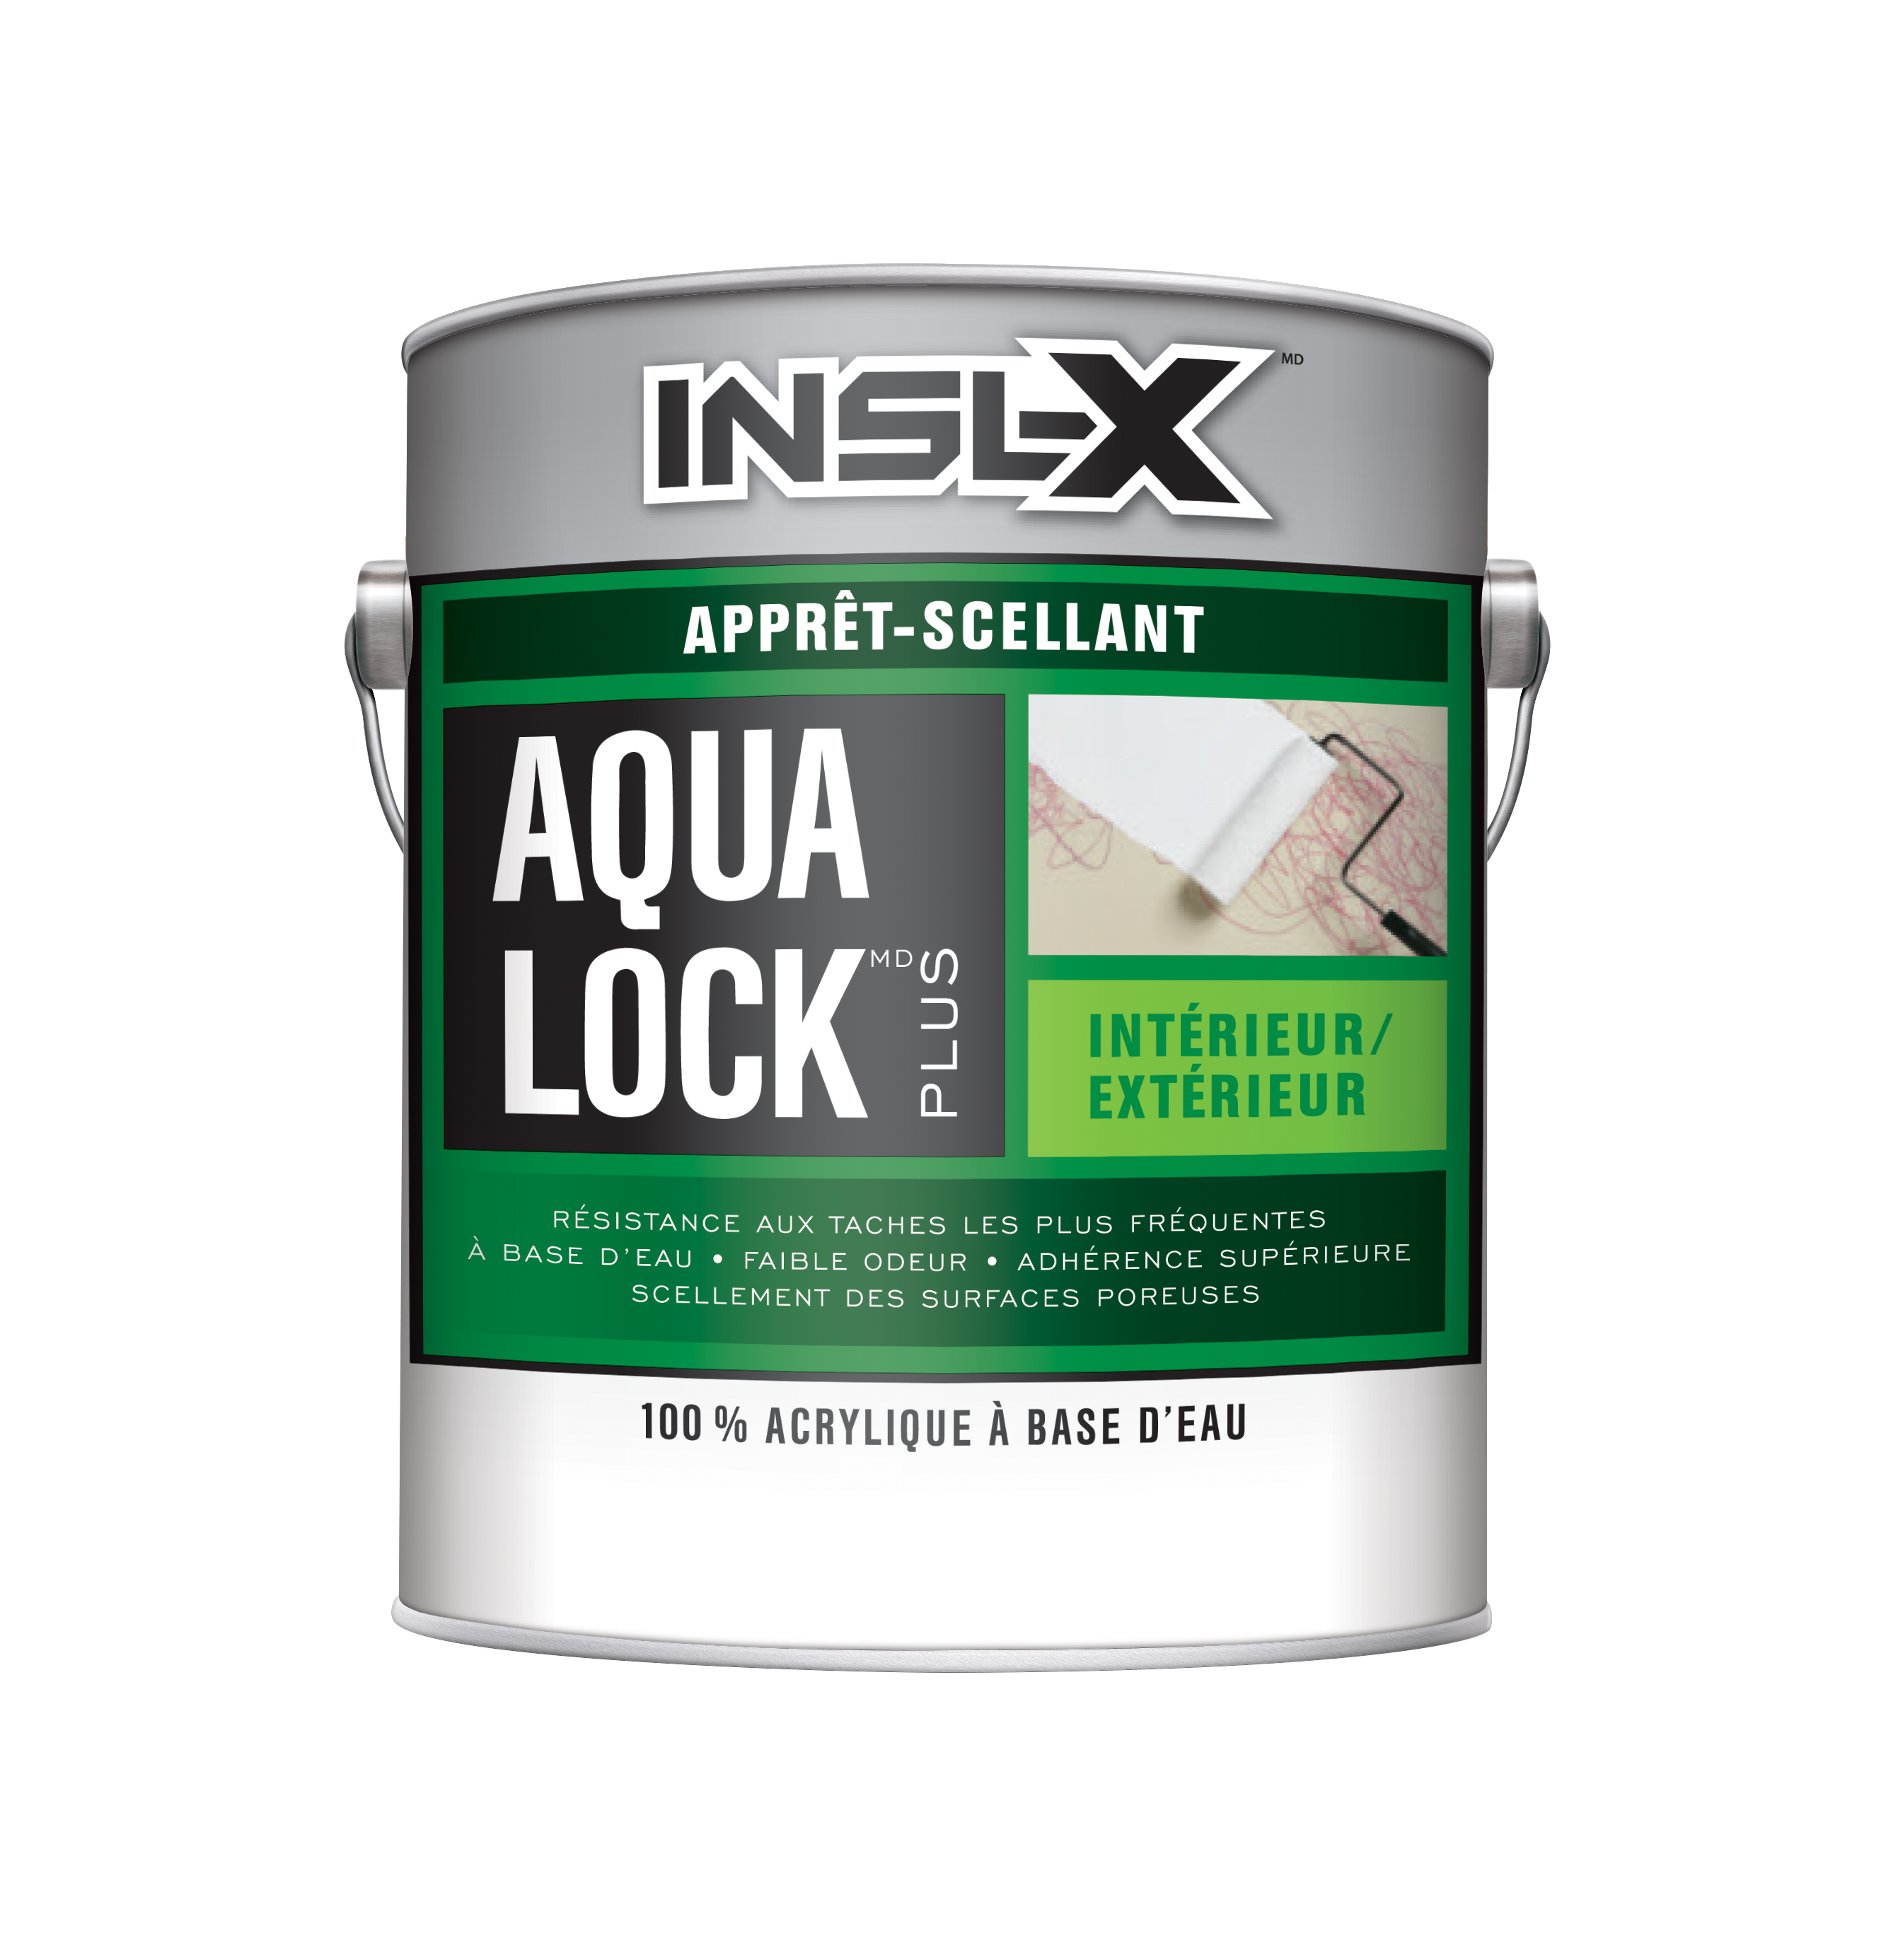 Apprêt-scellant Aqua Lock Plus - Benjamin Moore